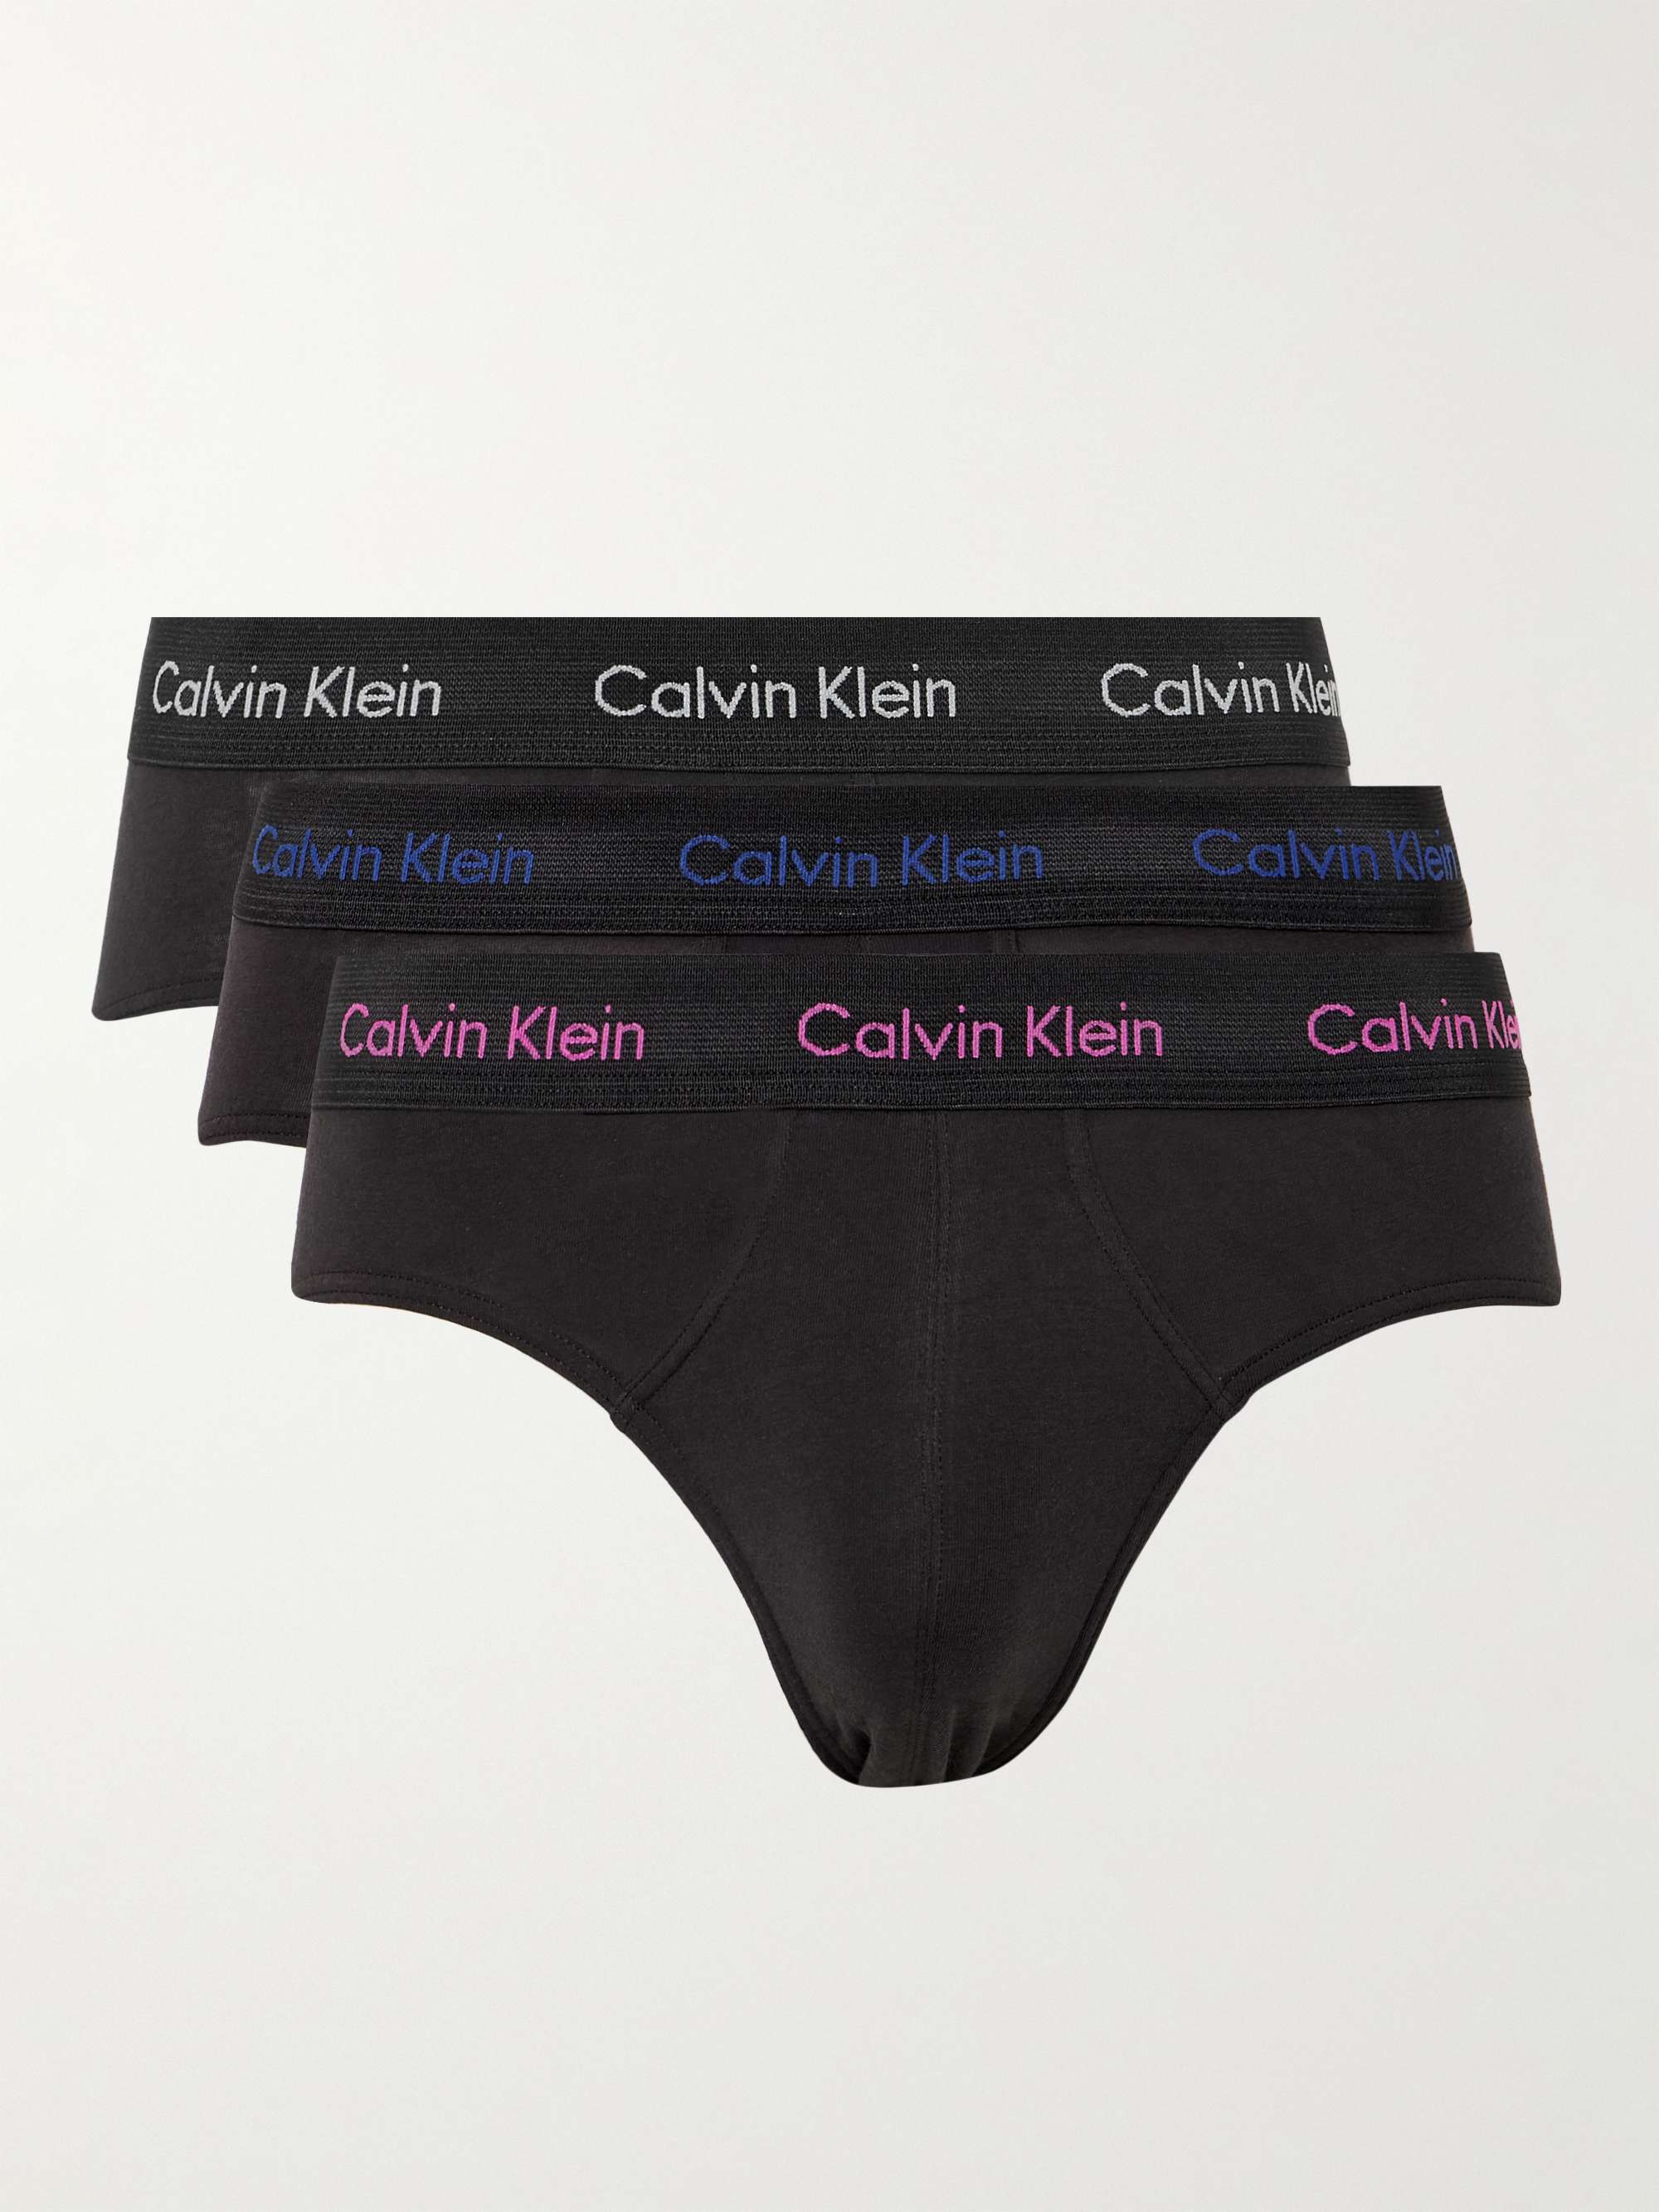 Calvin Klein 4-pack Hip Stretch Knit Briefs in Black for Men